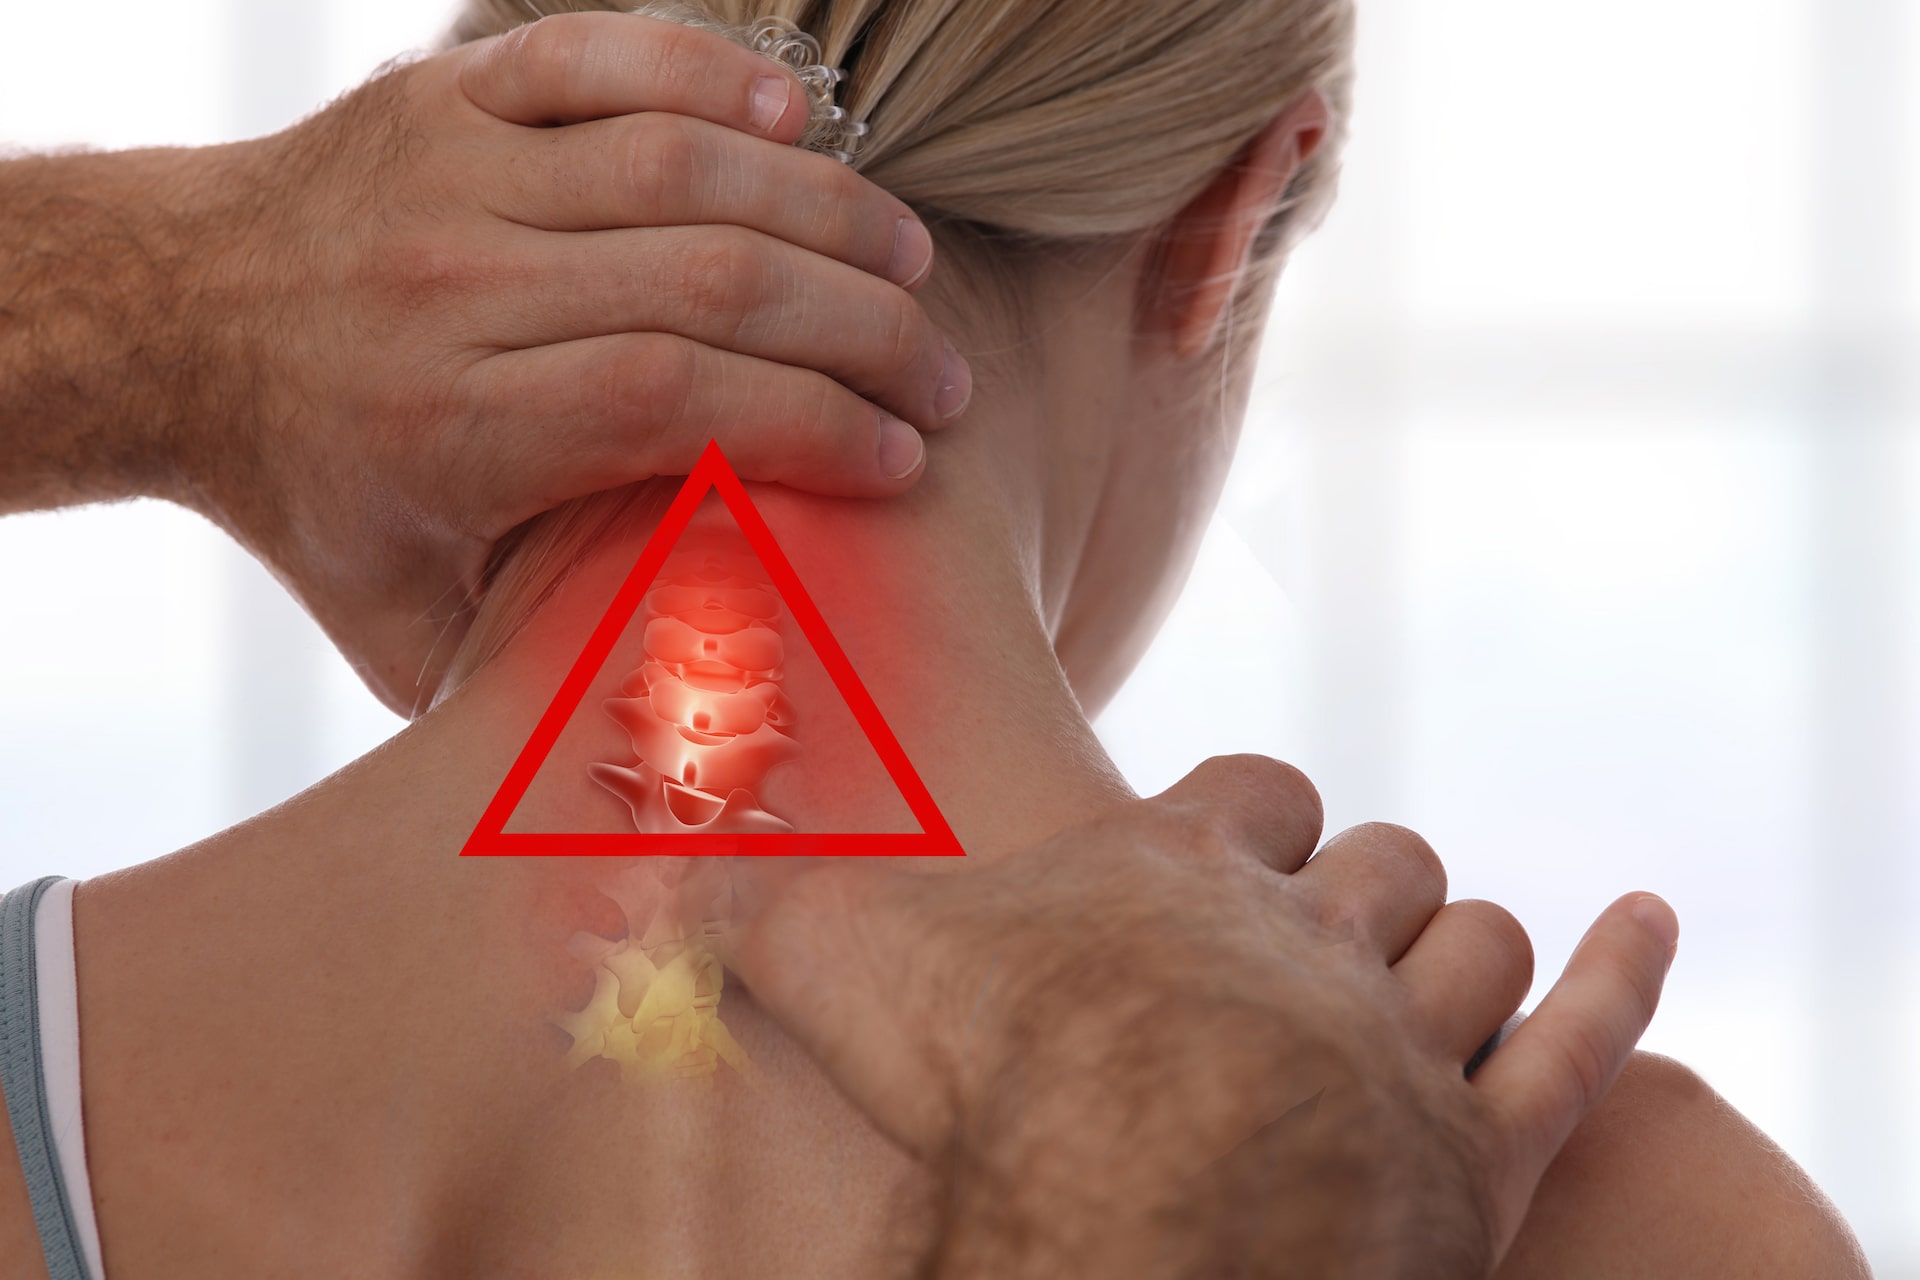 Ein Physiotherapeut tastet die Halswirbelsäule einer Frau ab. Dabei ist ein roter dreieckiger Bereich hervorgehoben, der Nackenschmerzen oder einen Fokus anzeigt.